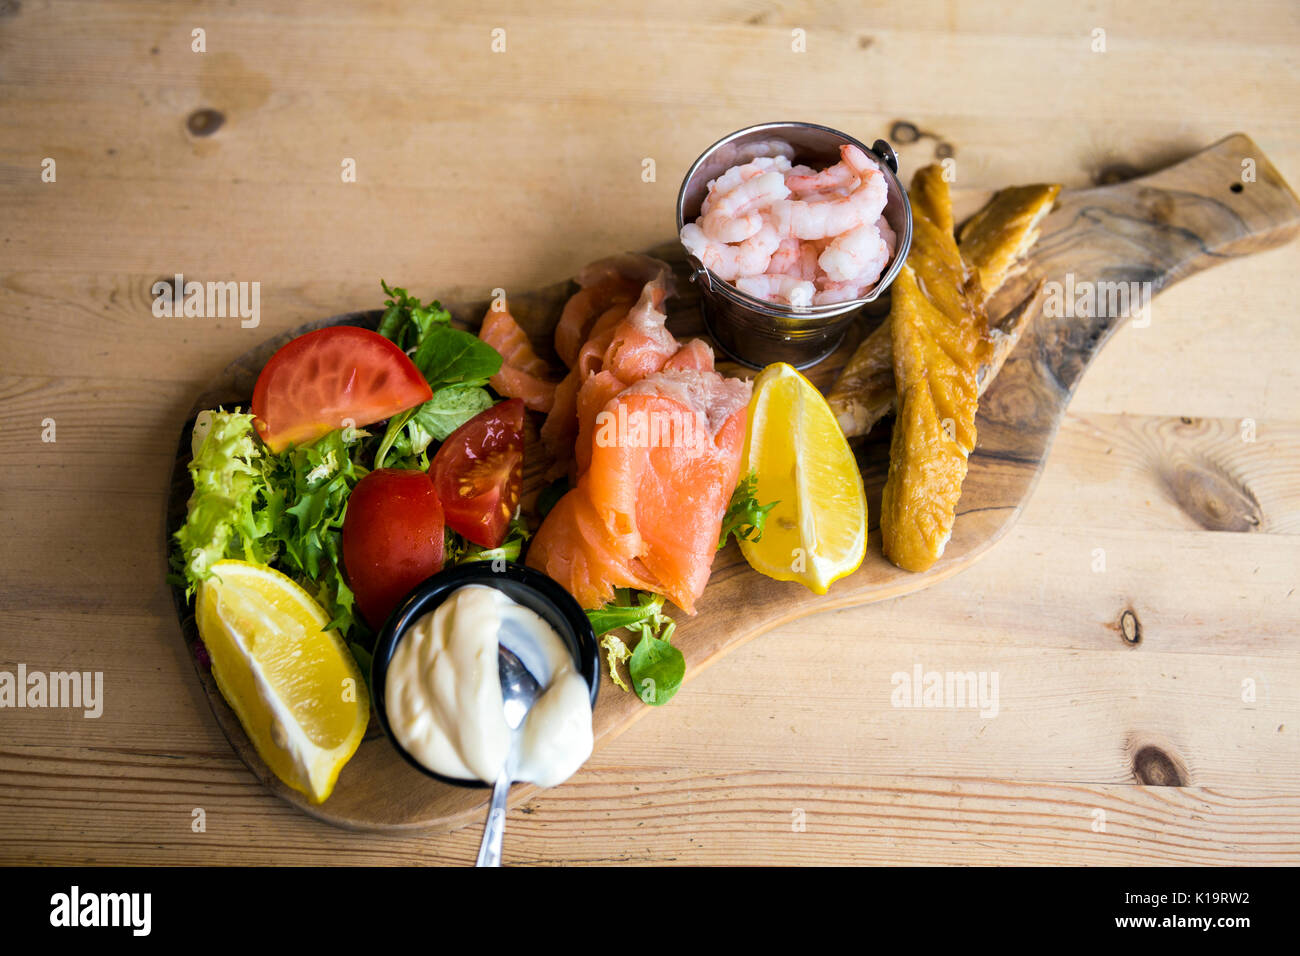 Piatto di frutti di mare su di un tagliere di legno e un tavolo di legno, gamberi, sgombro, salmone affumicato, insalata Foto Stock